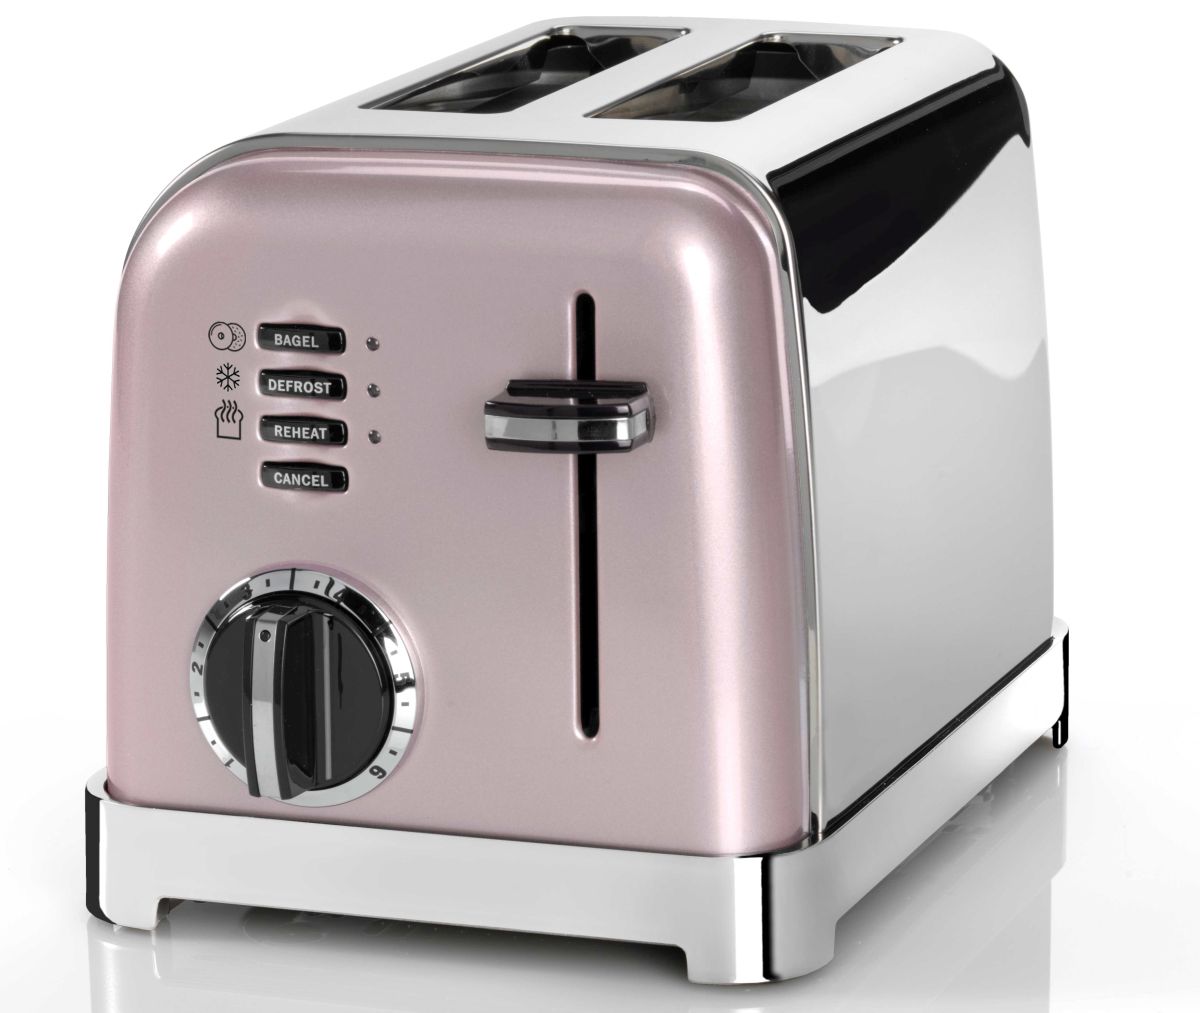 Pink Retro Style Cuisinart Toaster ,cuisinart Toaster, 4 Slice Toaster,  Pink Appliances, Pink Cuisinart 4 Slot Toaster 